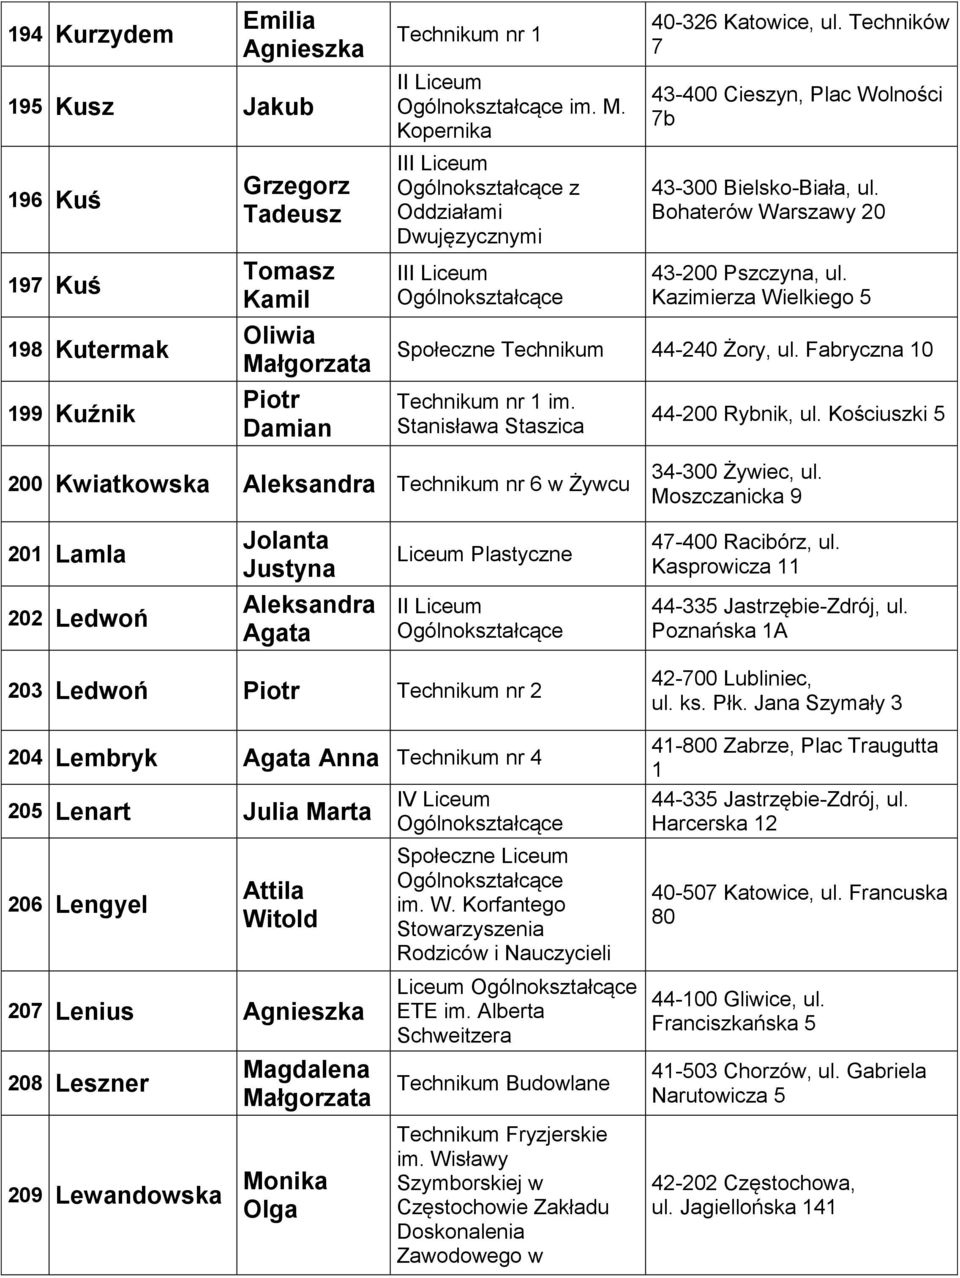 Stanisława Staszica 44-200 Rybnik, ul. Kościuszki 5 200 Kwiatkowska Aleksandra Technikum nr 6 w Żywcu 34-300 Żywiec, ul.